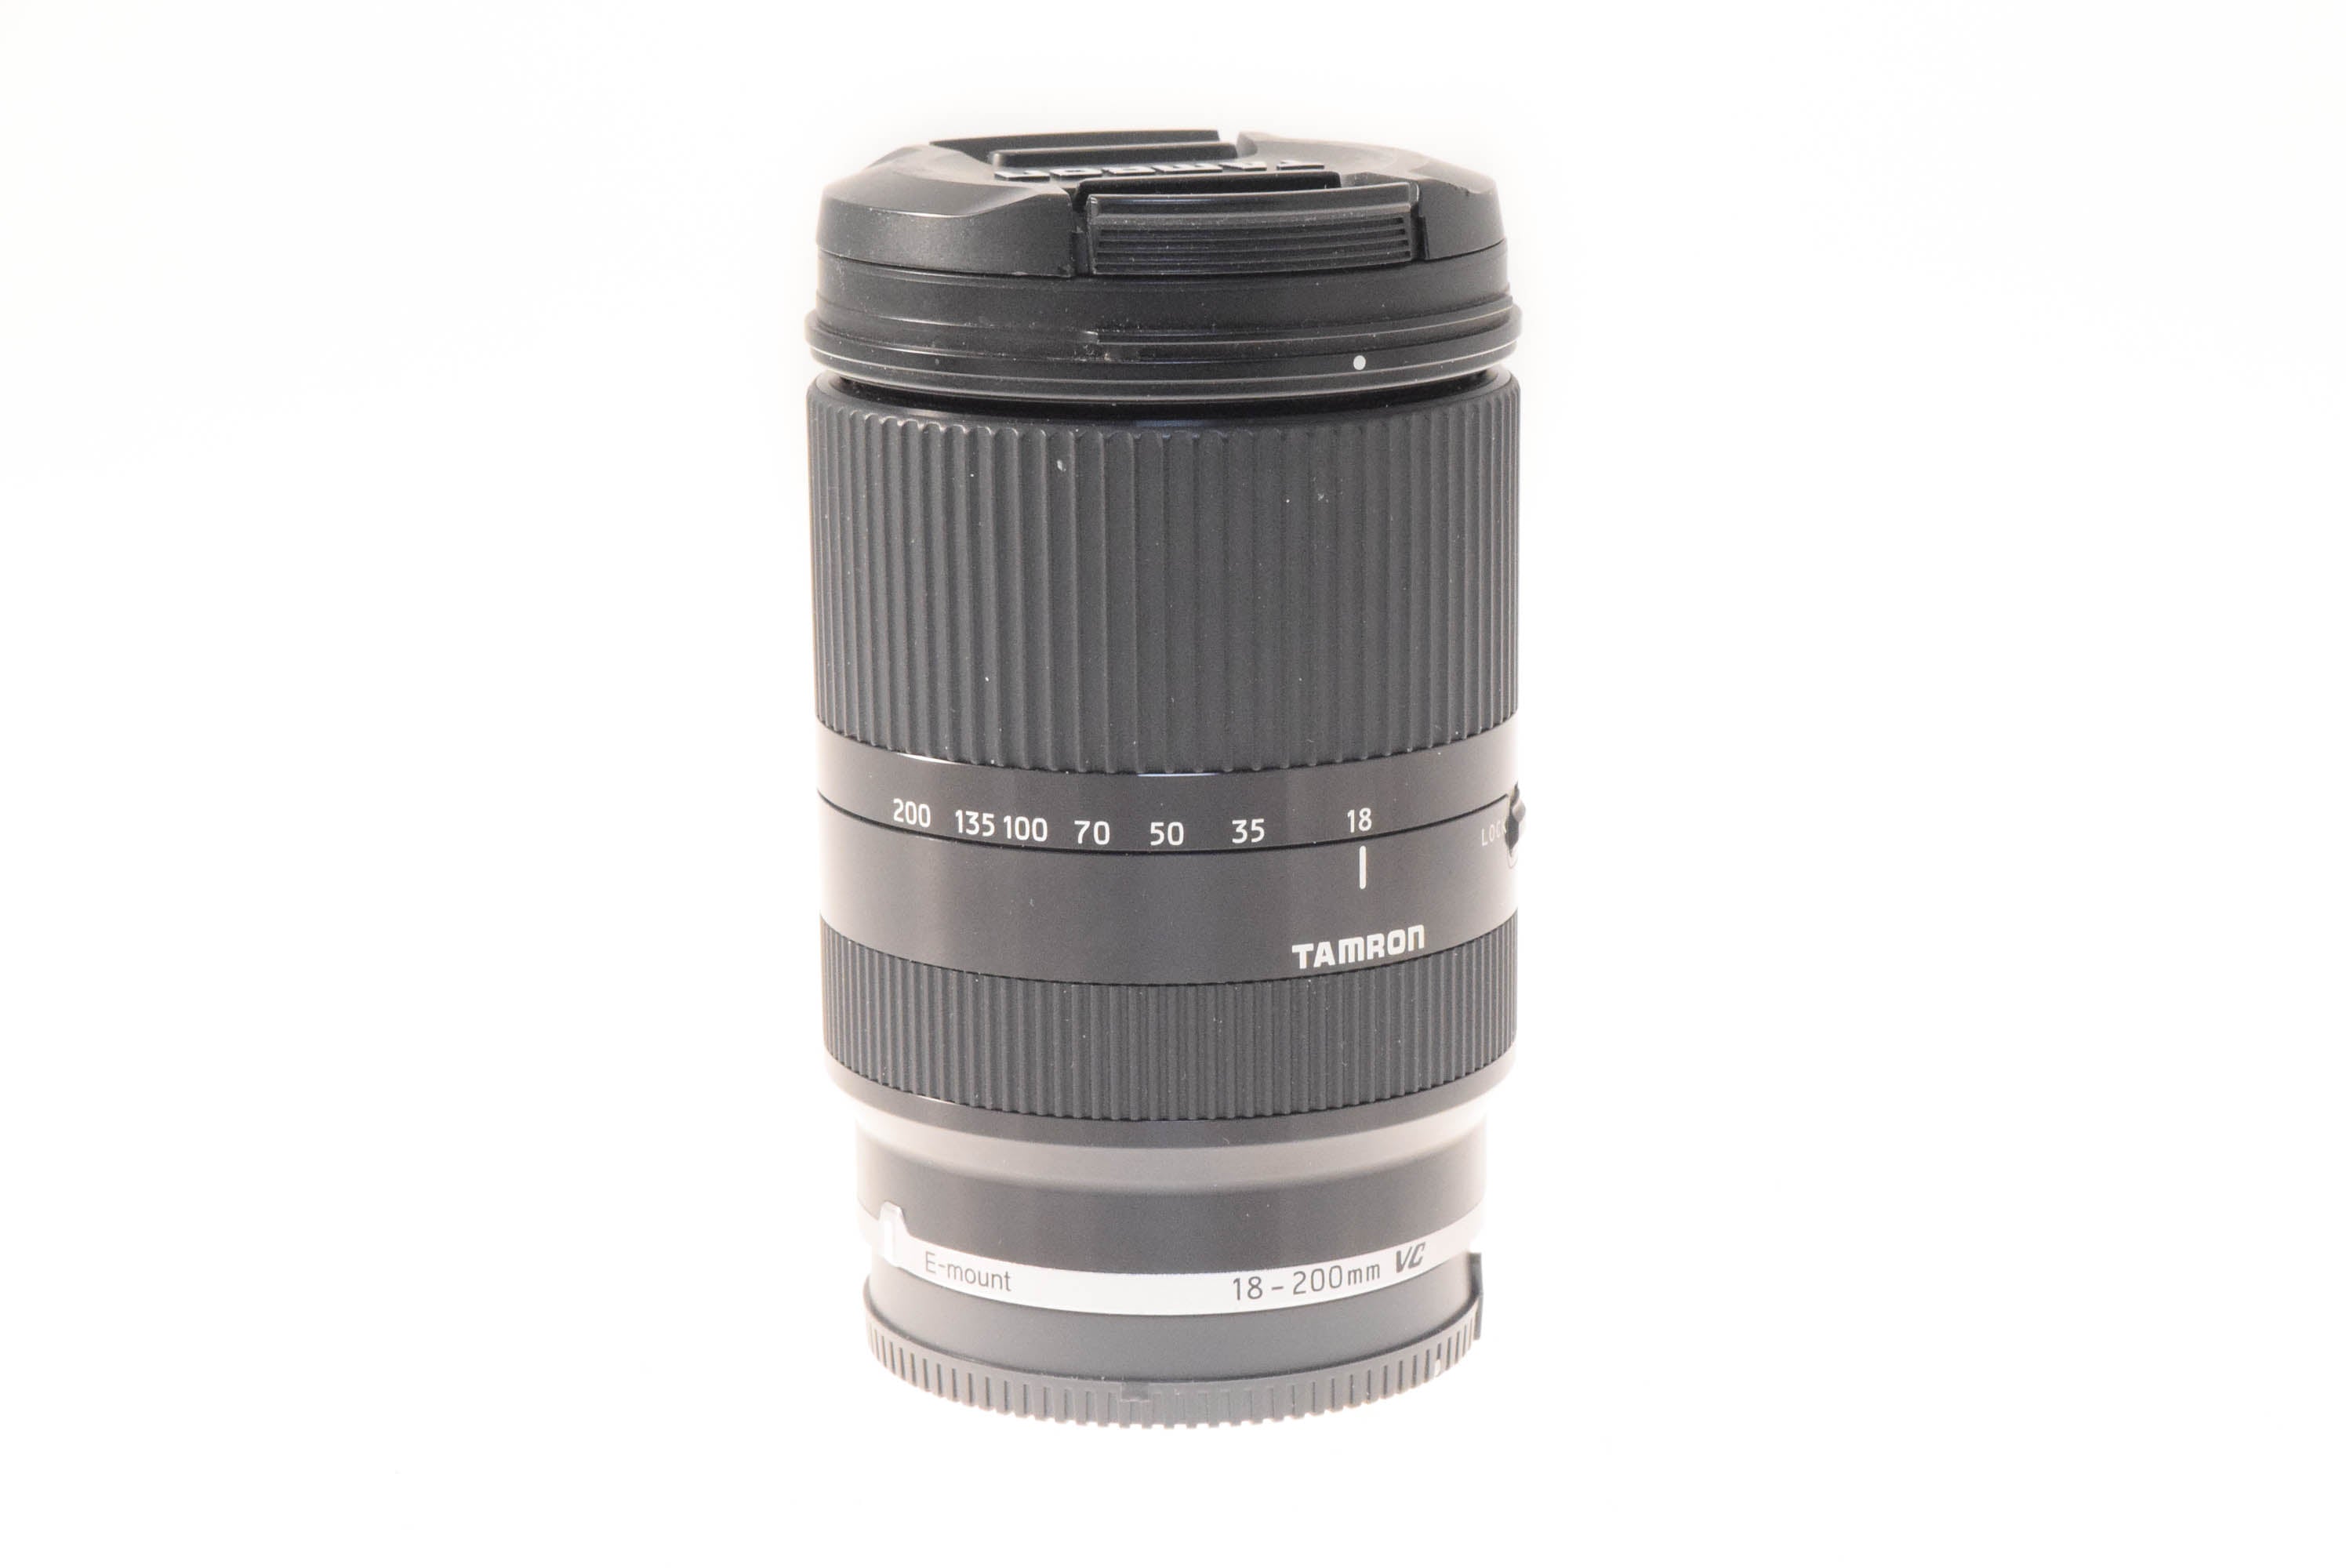 Tamron 18-200mm f3.5-6.3 DI III VC (B011){62} - Lens